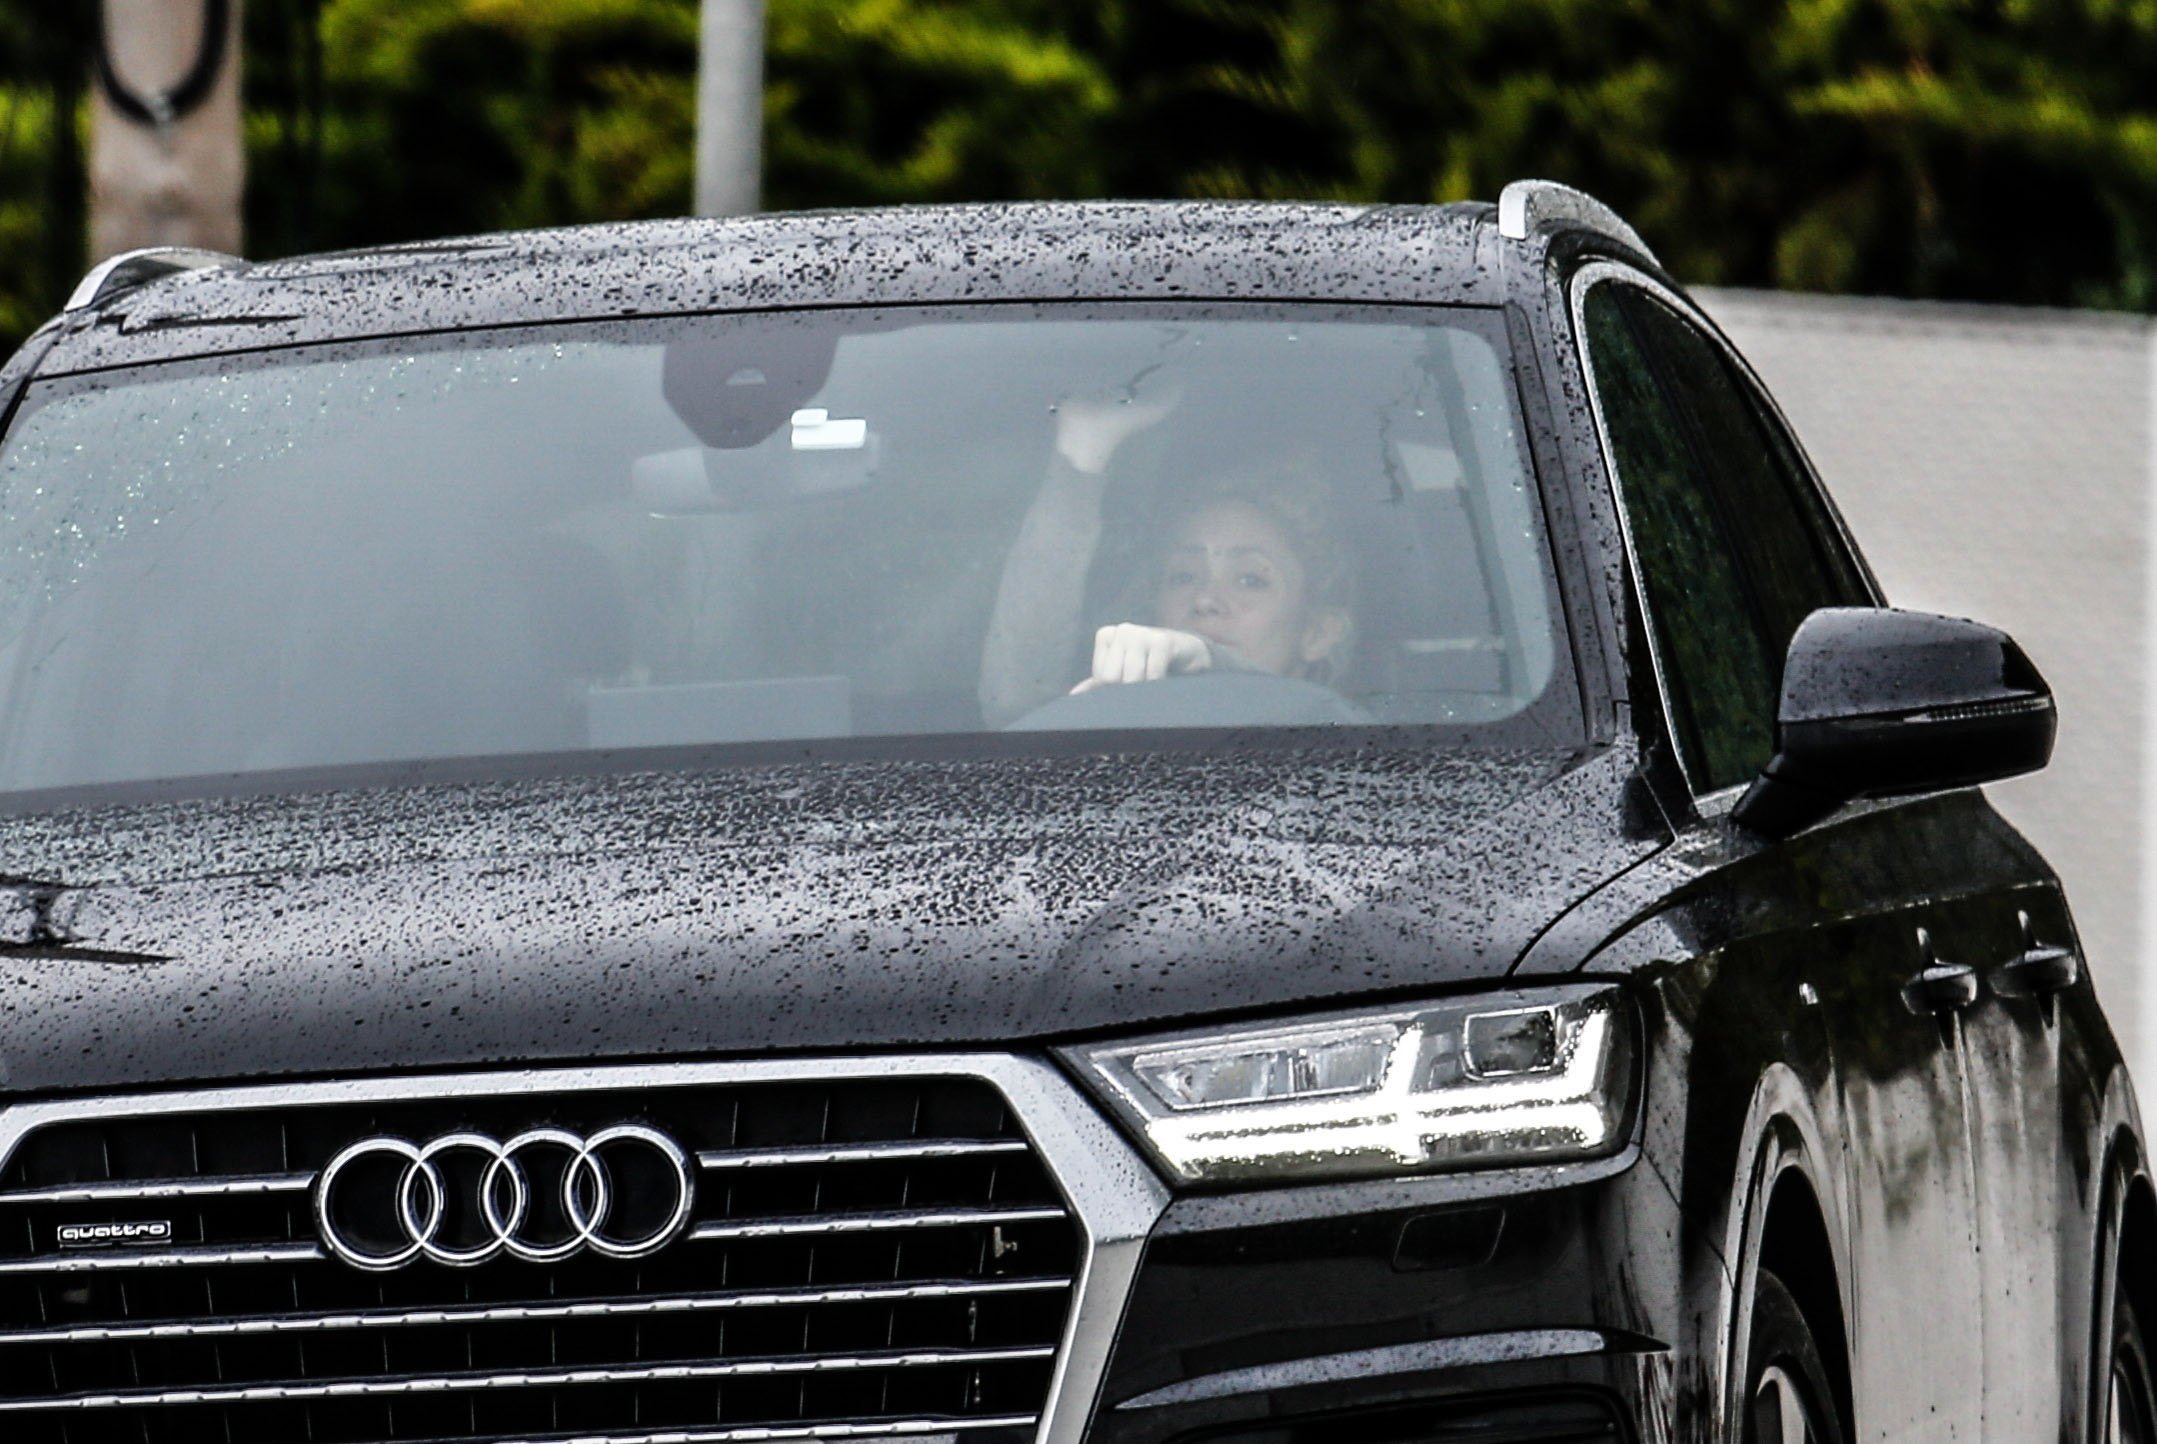 Shakira i el trasllat que no s'acaba: xifra milionària per recuperar els cotxes de luxe